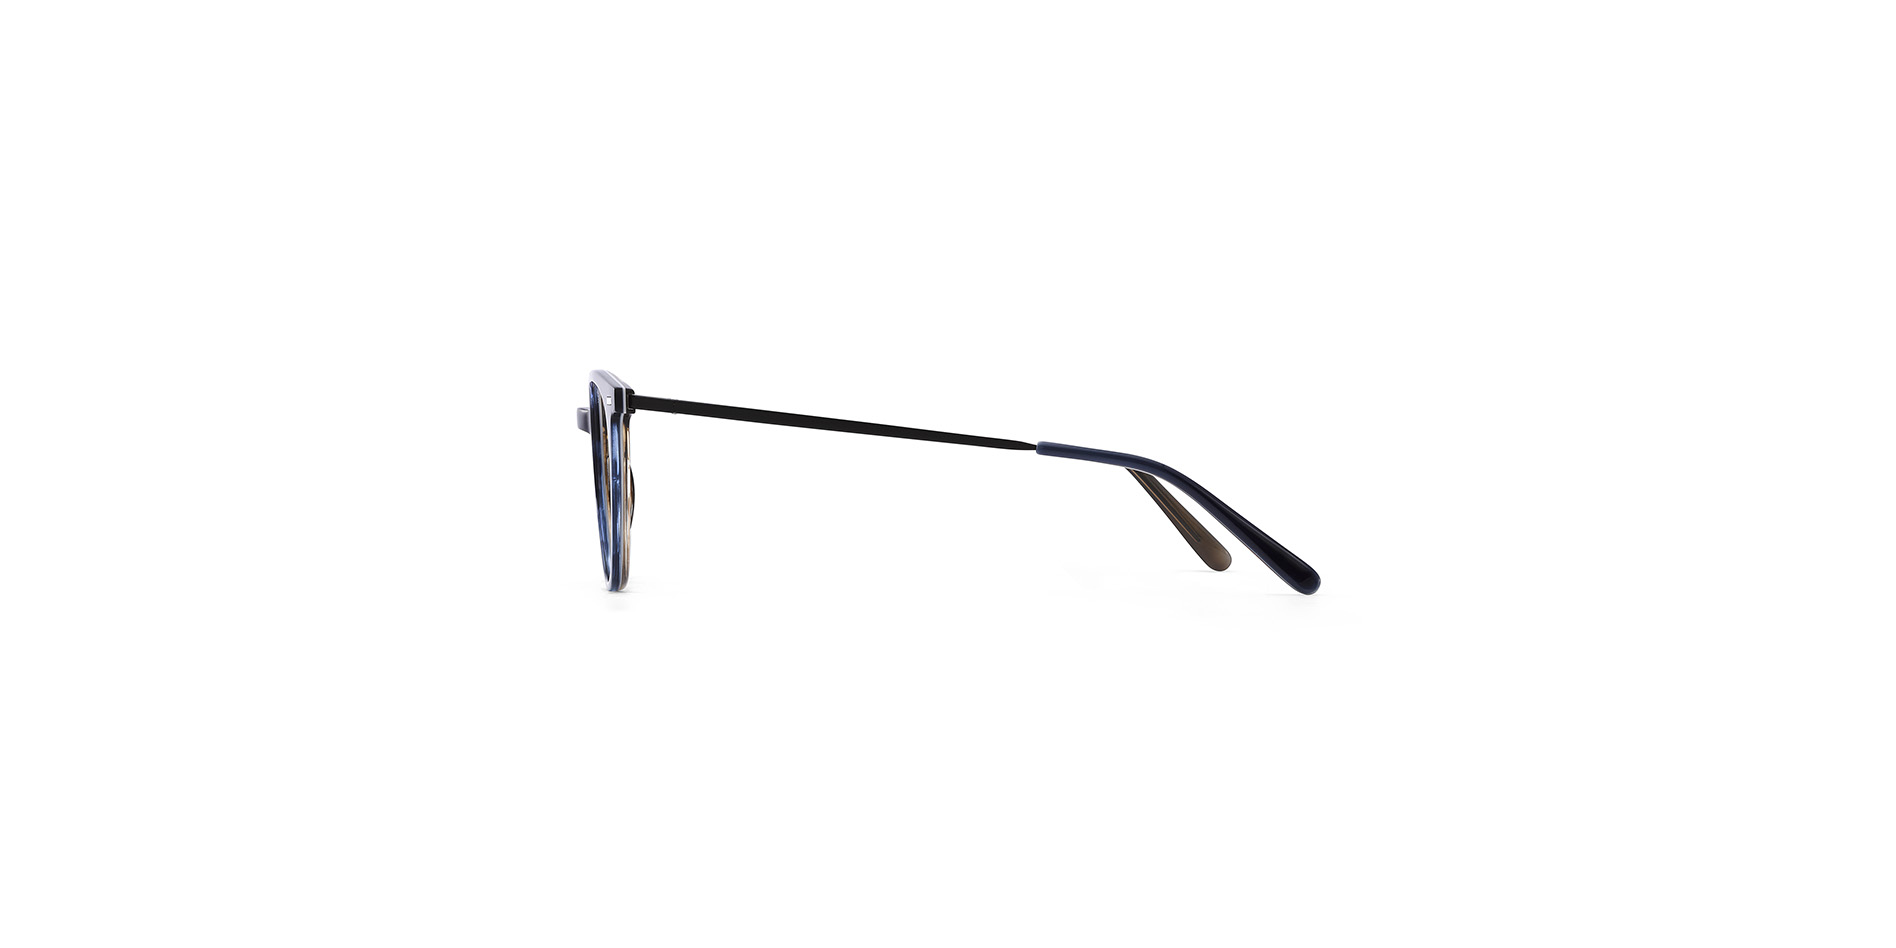 Feminine Damen-Korrektionsbrille aus Acetat in Pantoform, der Bügel ist mit einem Flexscharnier ausgestattet,  BC 002 FLEX CL